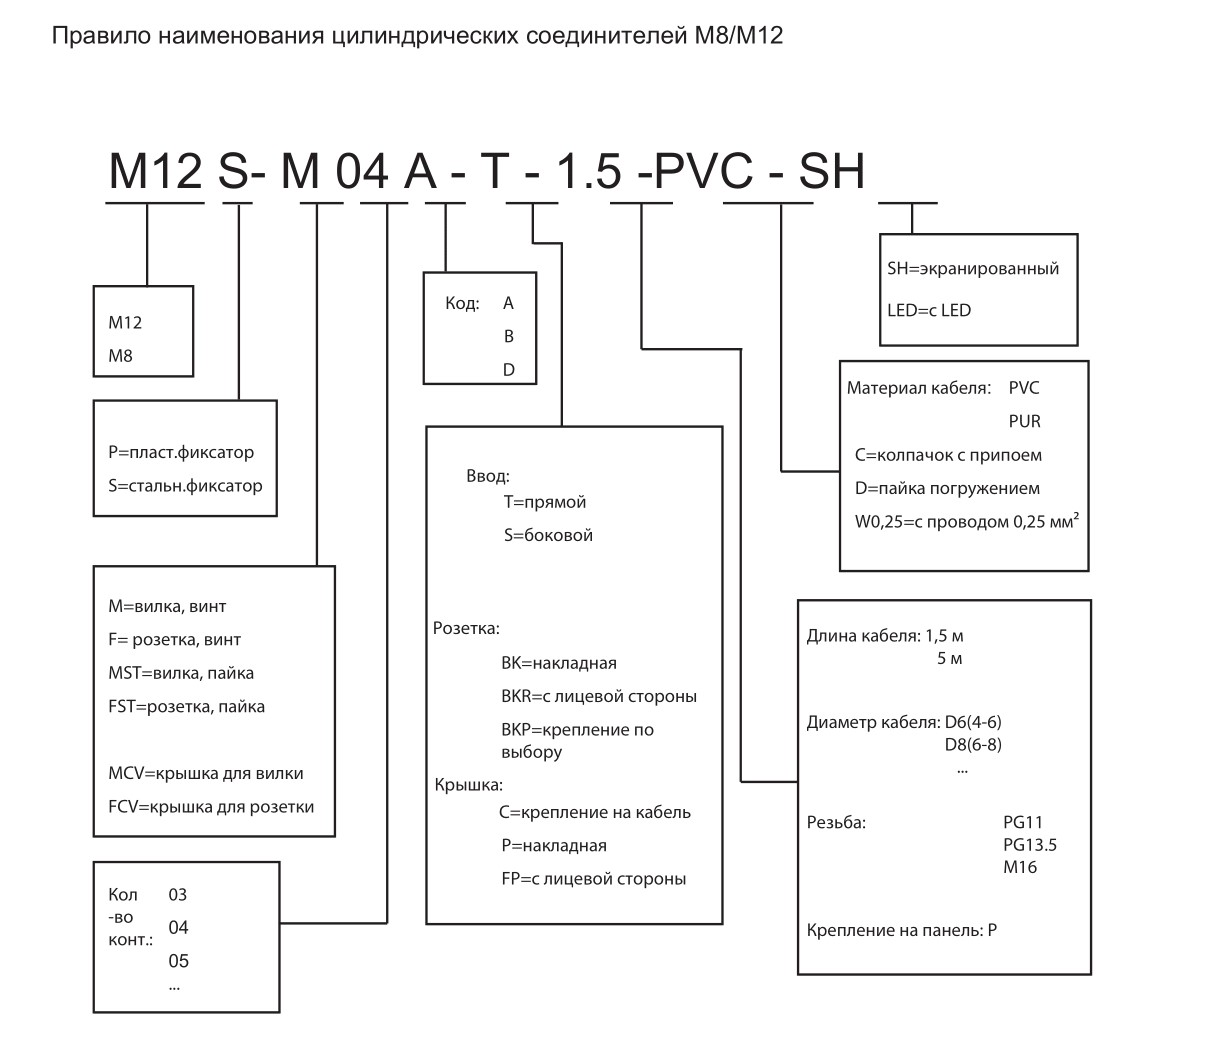 Цилиндрический соединитель-вилка с кабелем M12-M04D-T-10.0-PUR-PFN 1630040014024: Структура обозначения